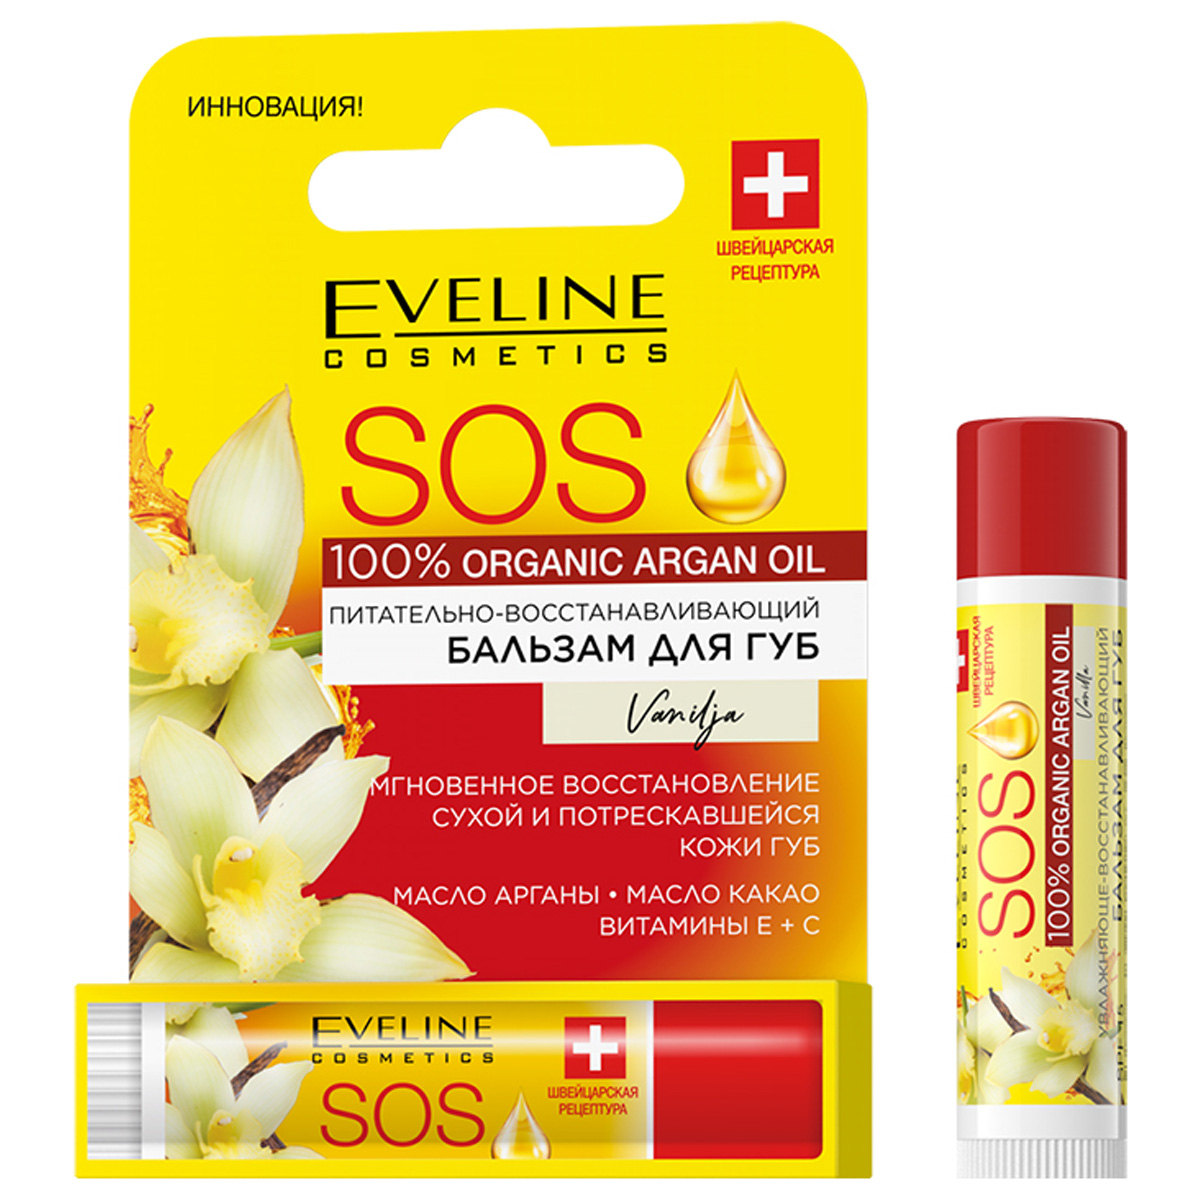 Бальзам для губ Eveline Cosmetics с аргановым маслом Vanilla 4,5г бальзам для губ eveline cosmetics с аргановым маслом vanilla 4 5г